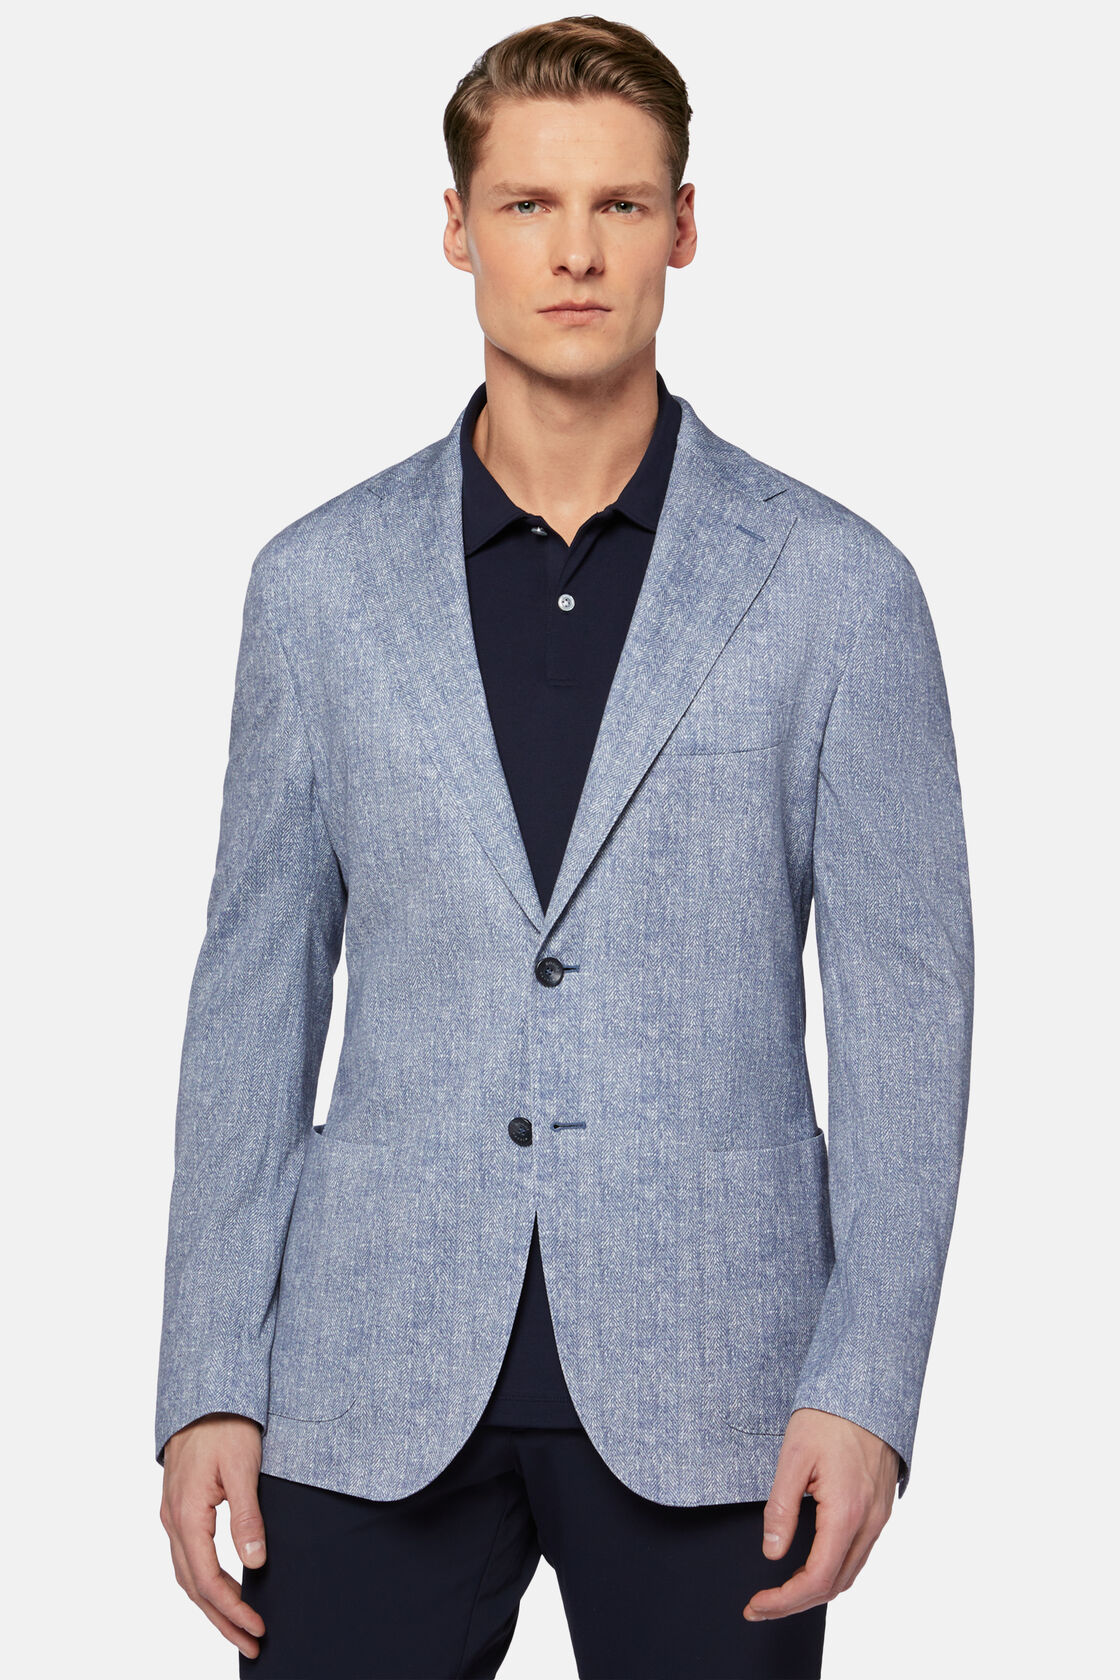 Blauw bedrukt jasje in katoen jersey en linnen, Blue, hi-res